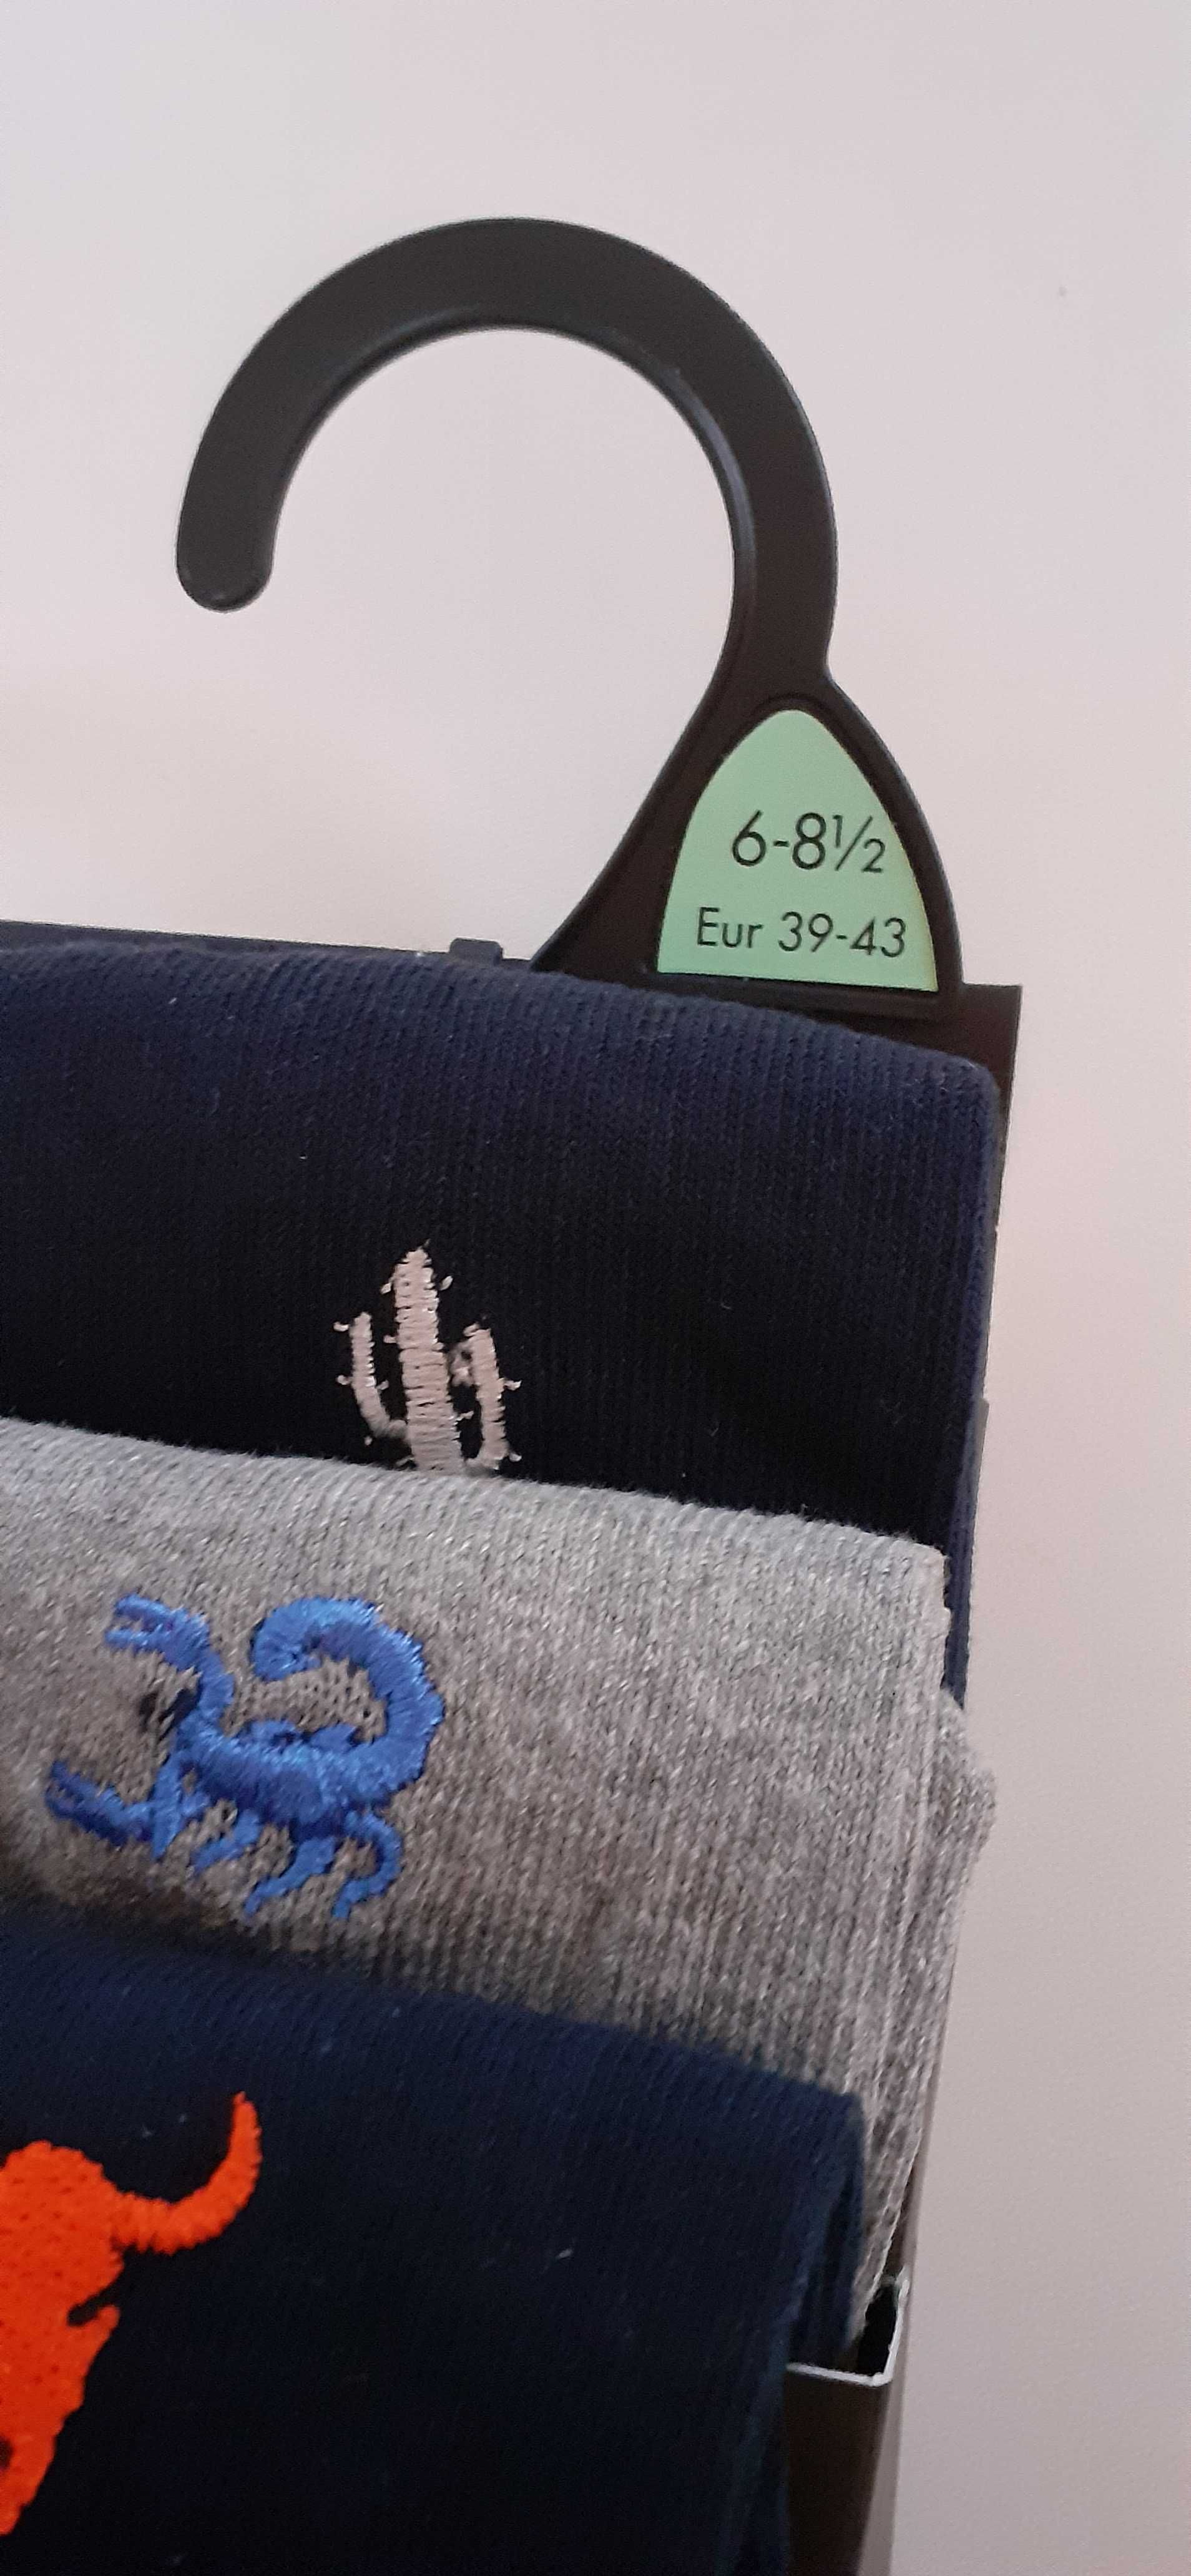 Набор мужских носков (5 шт) FRESH FEEL на размер 6-8,5 (39-43)